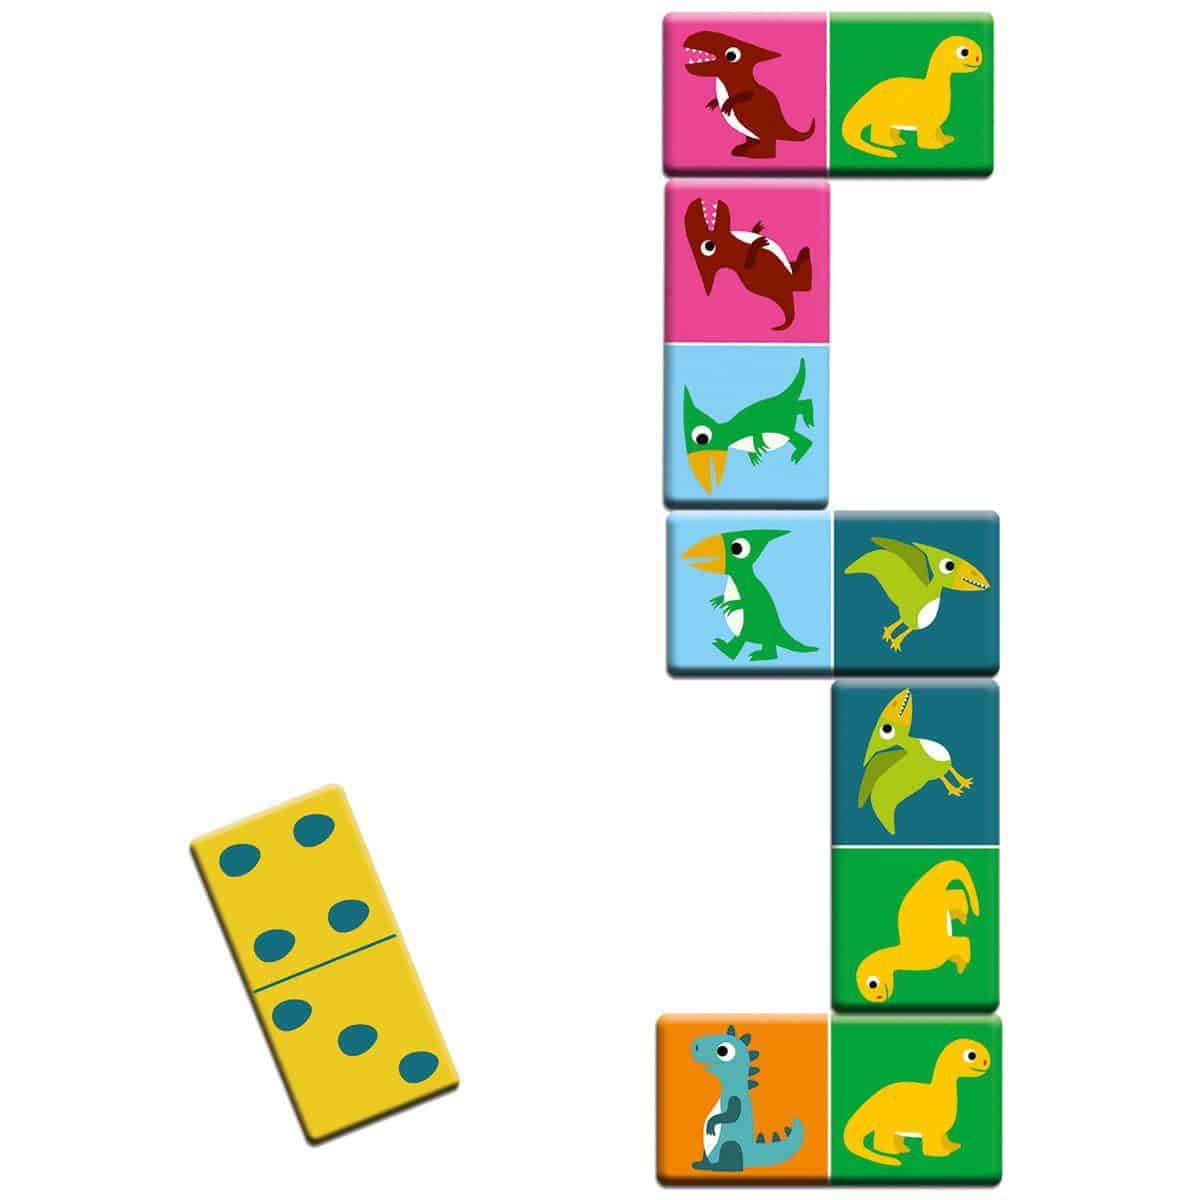 Jogo de Bingo, Memória e Dominó – Dinossauros | Djeco Djeco Mini-Me - Baby & Kids Store